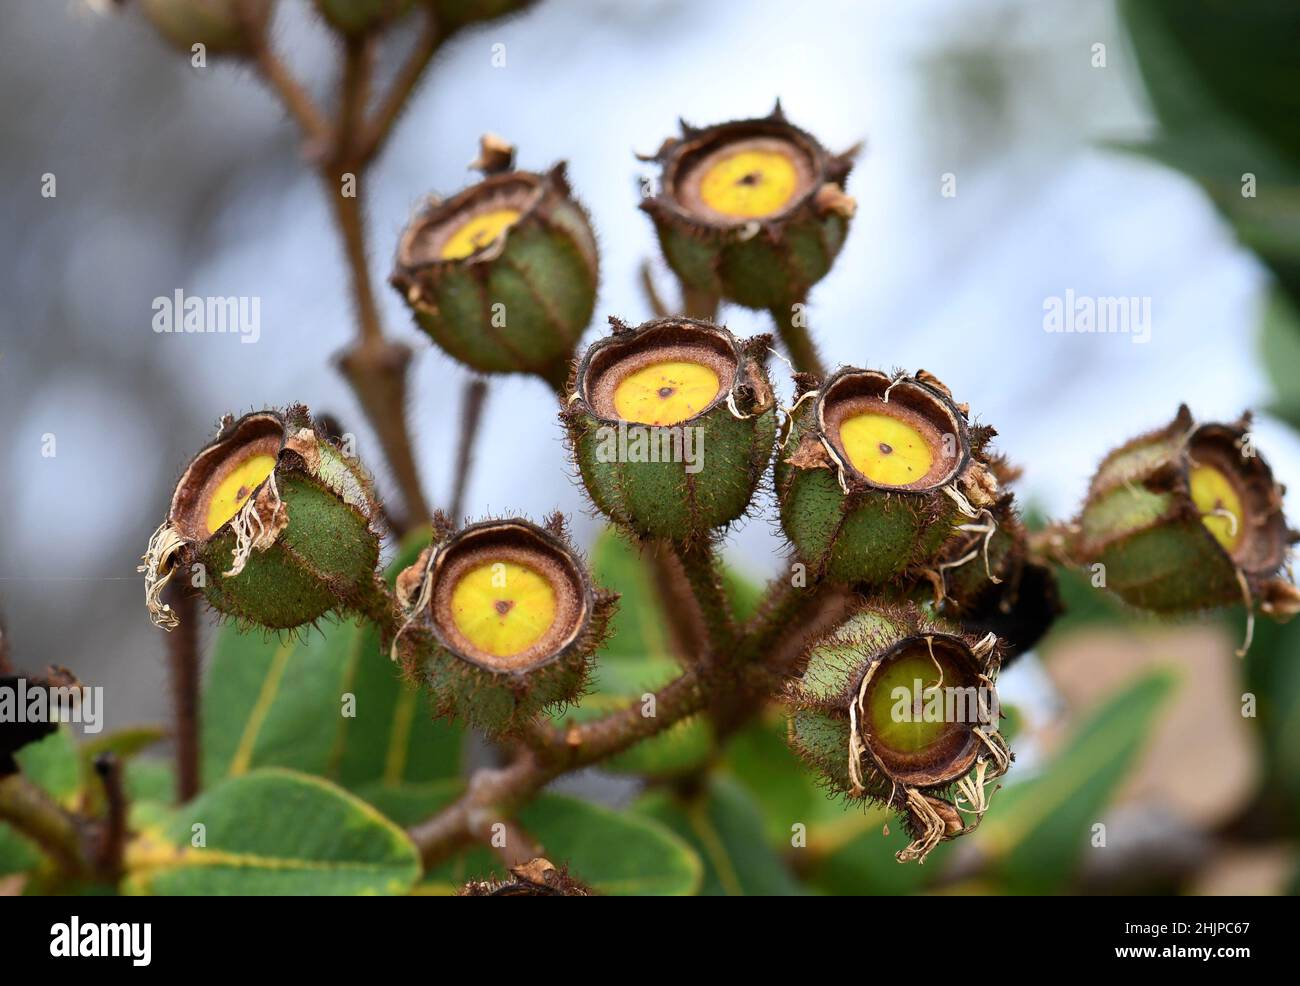 Gumminussfrüchte des australischen ZwergApple, Angophora hispida, Familie Myrtaceae. Begrenzte Verbreitung. Wächst in Heide und Wald Stockfoto